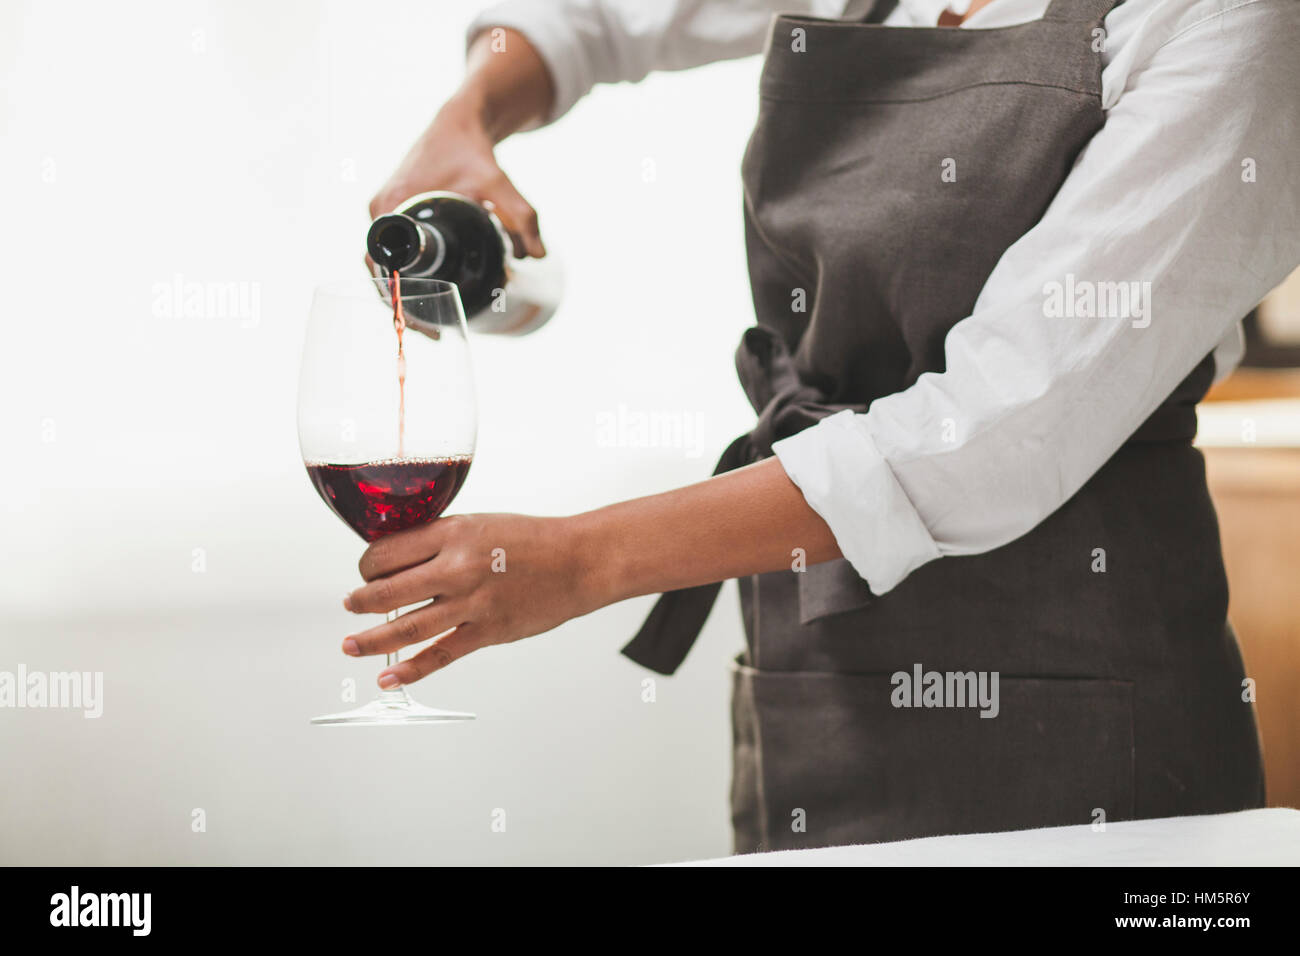 Red Wine Bra Boobs Woman Size Posing Glass Wine Xxl Stock Photo by  ©Tverdohlib.com 661571290